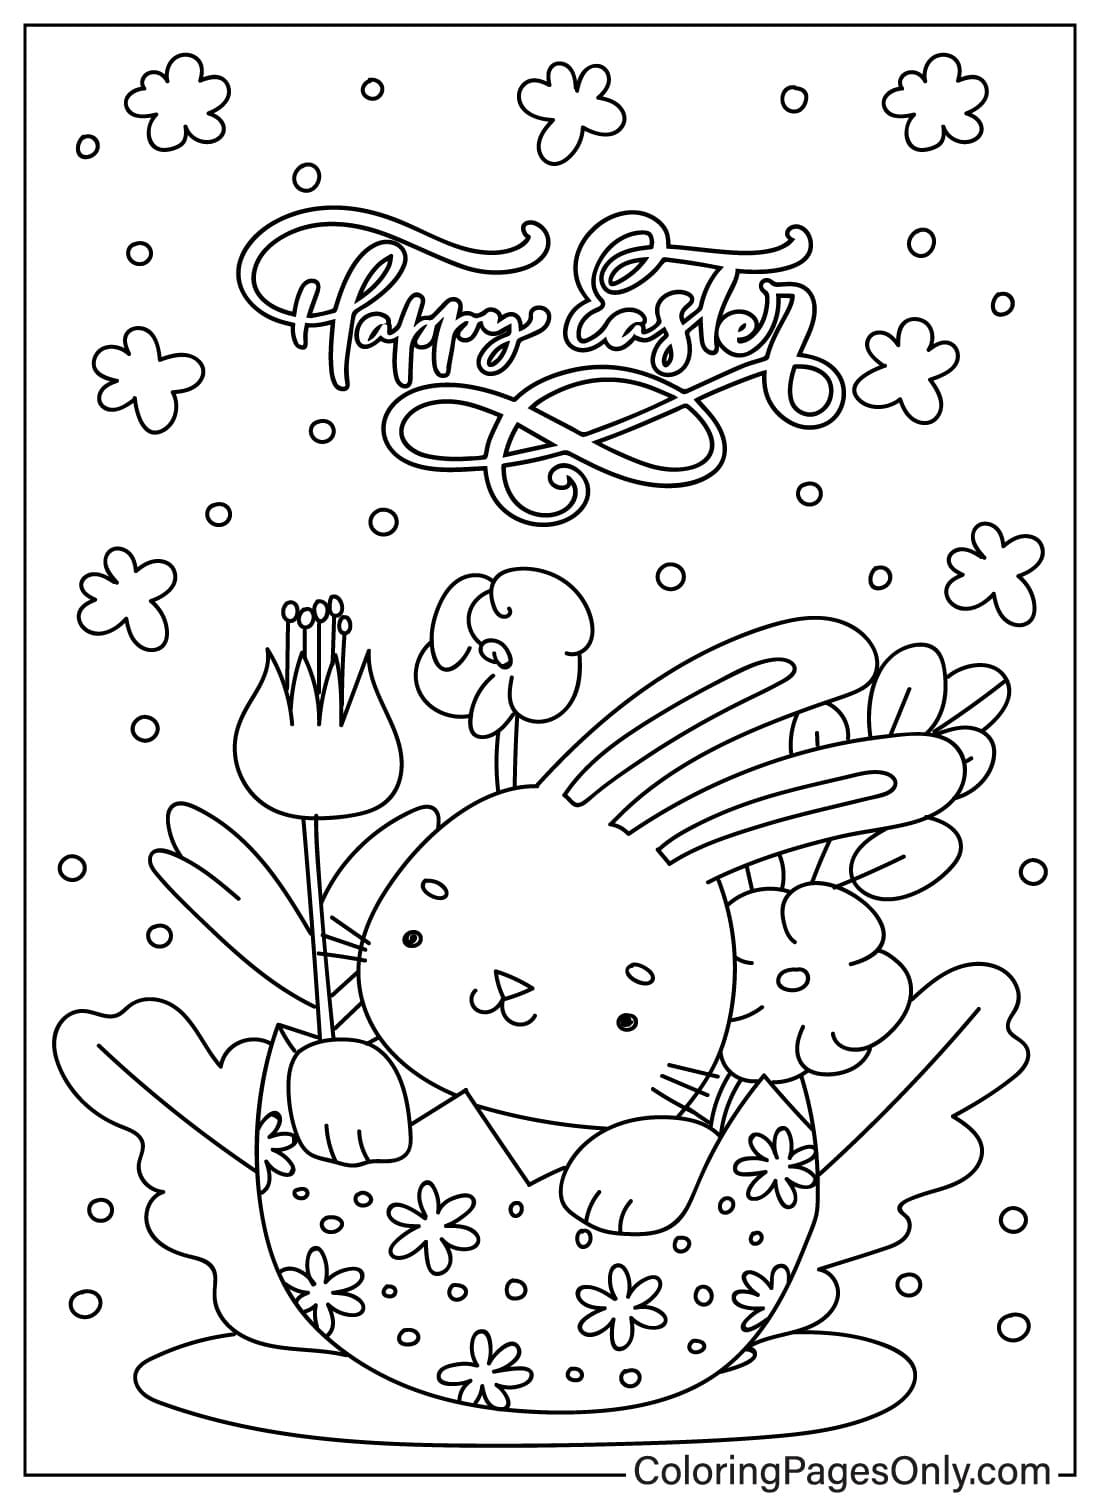 Tarjeta de Pascua Página para colorear imprimible de Tarjeta de Pascua